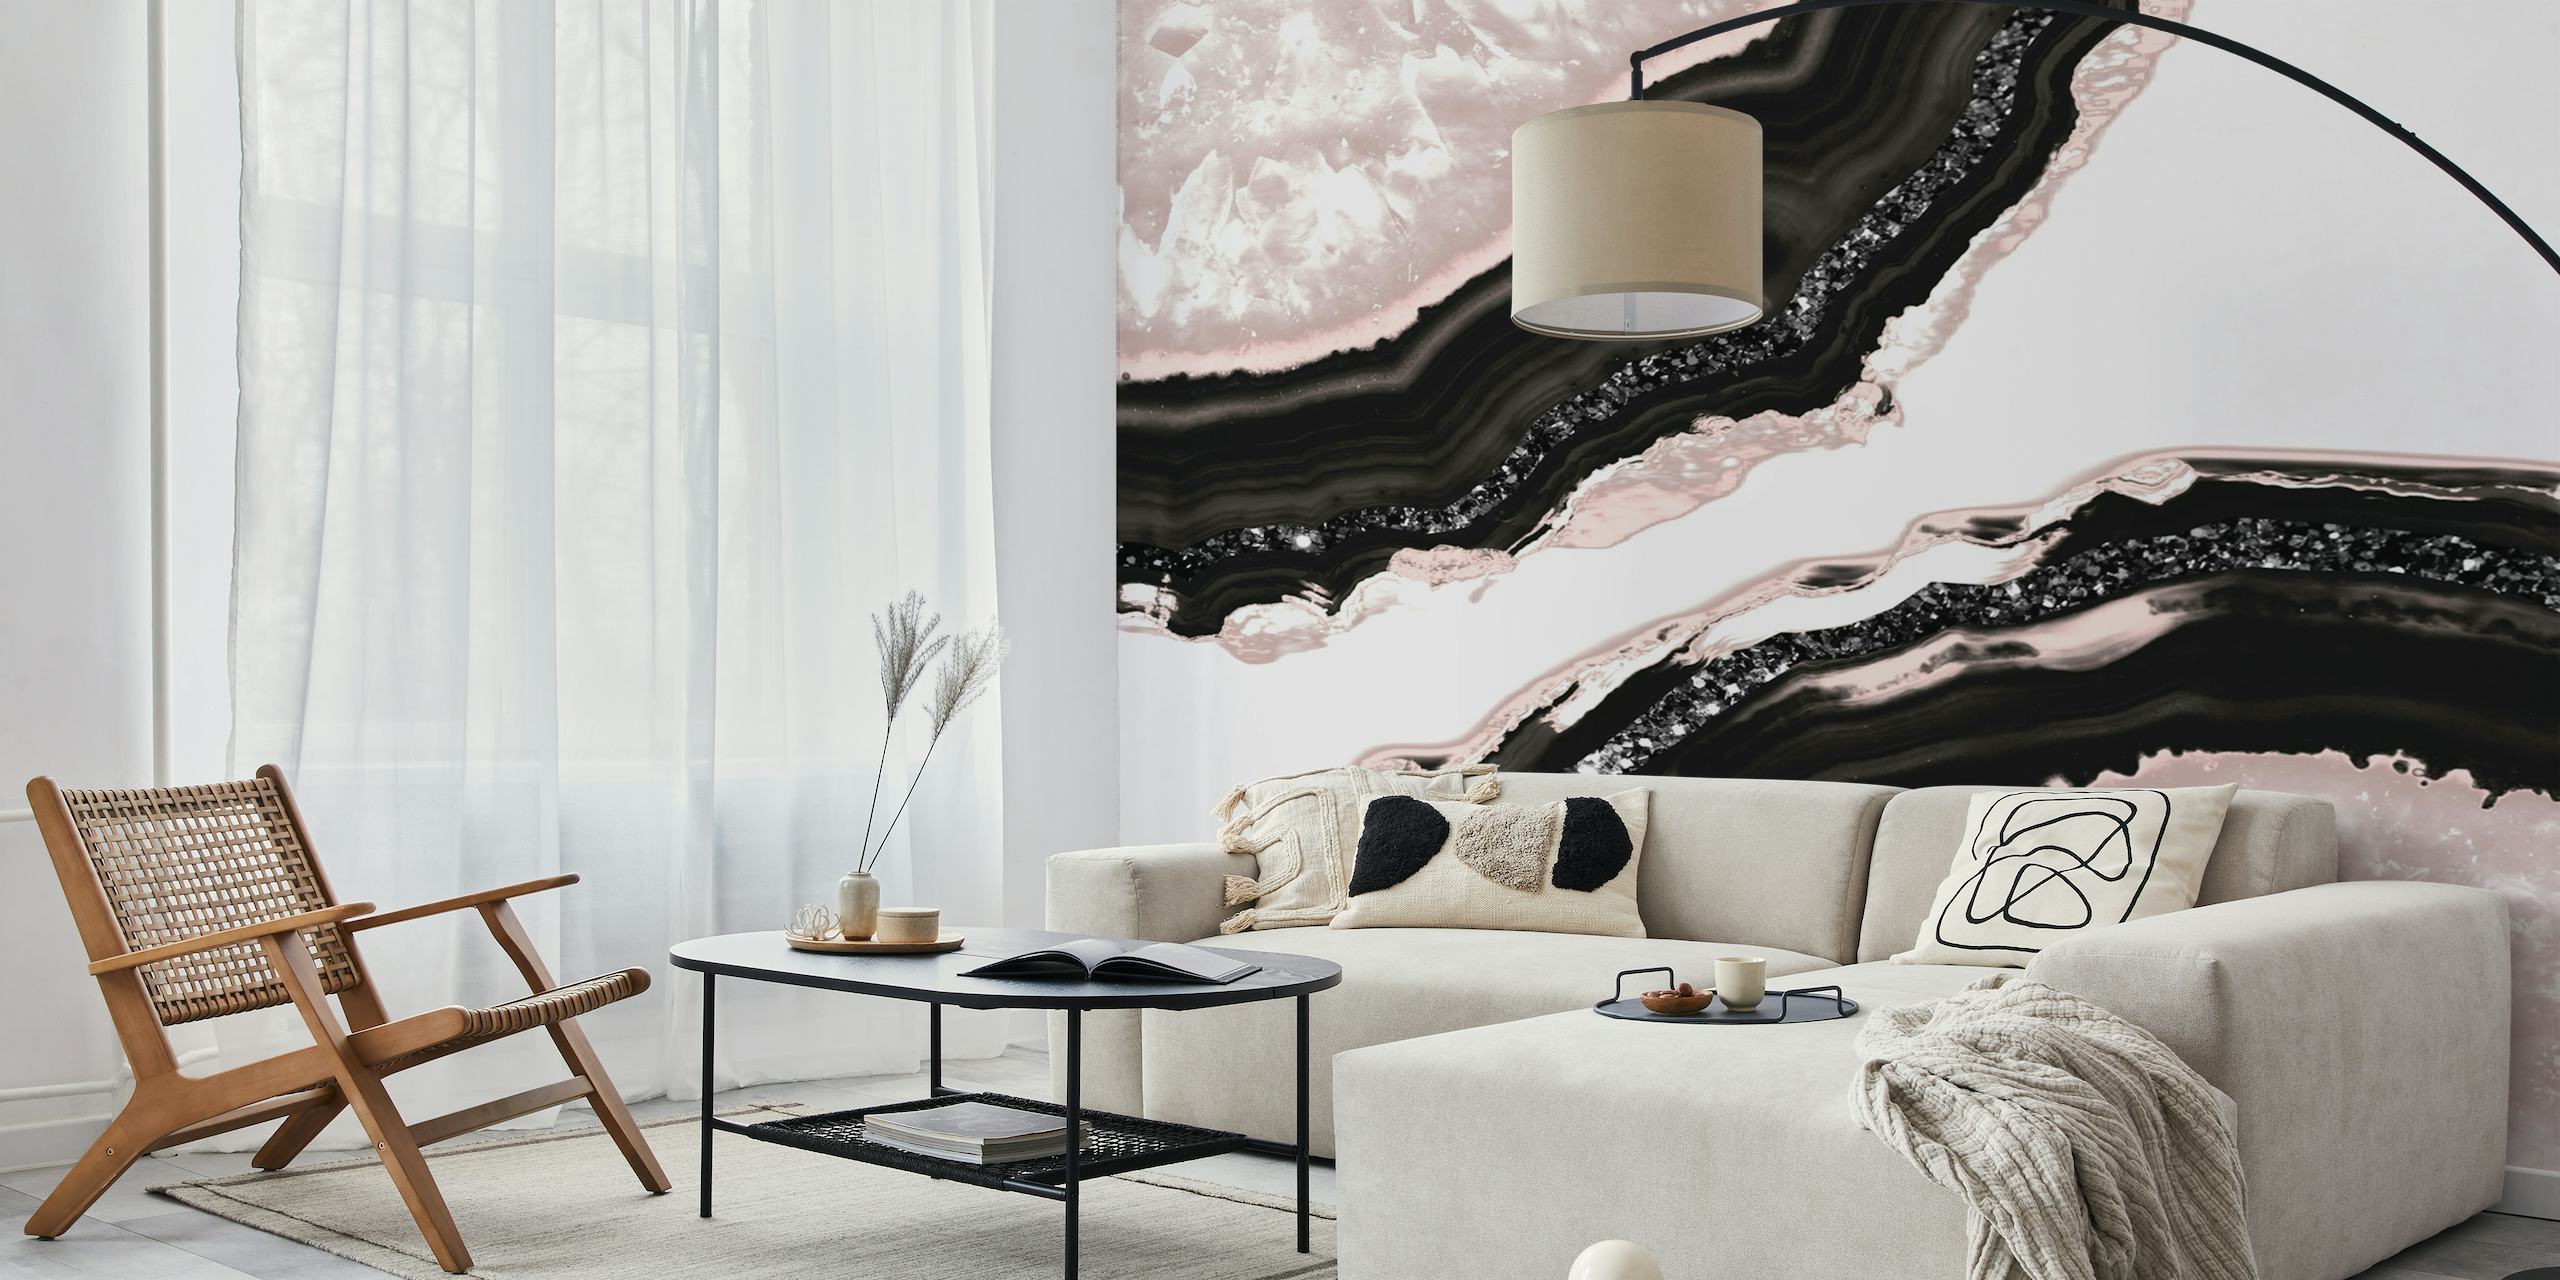 Peinture murale élégante inspirée de l'agate avec des motifs noirs, blancs et rose tendre et des accents de paillettes